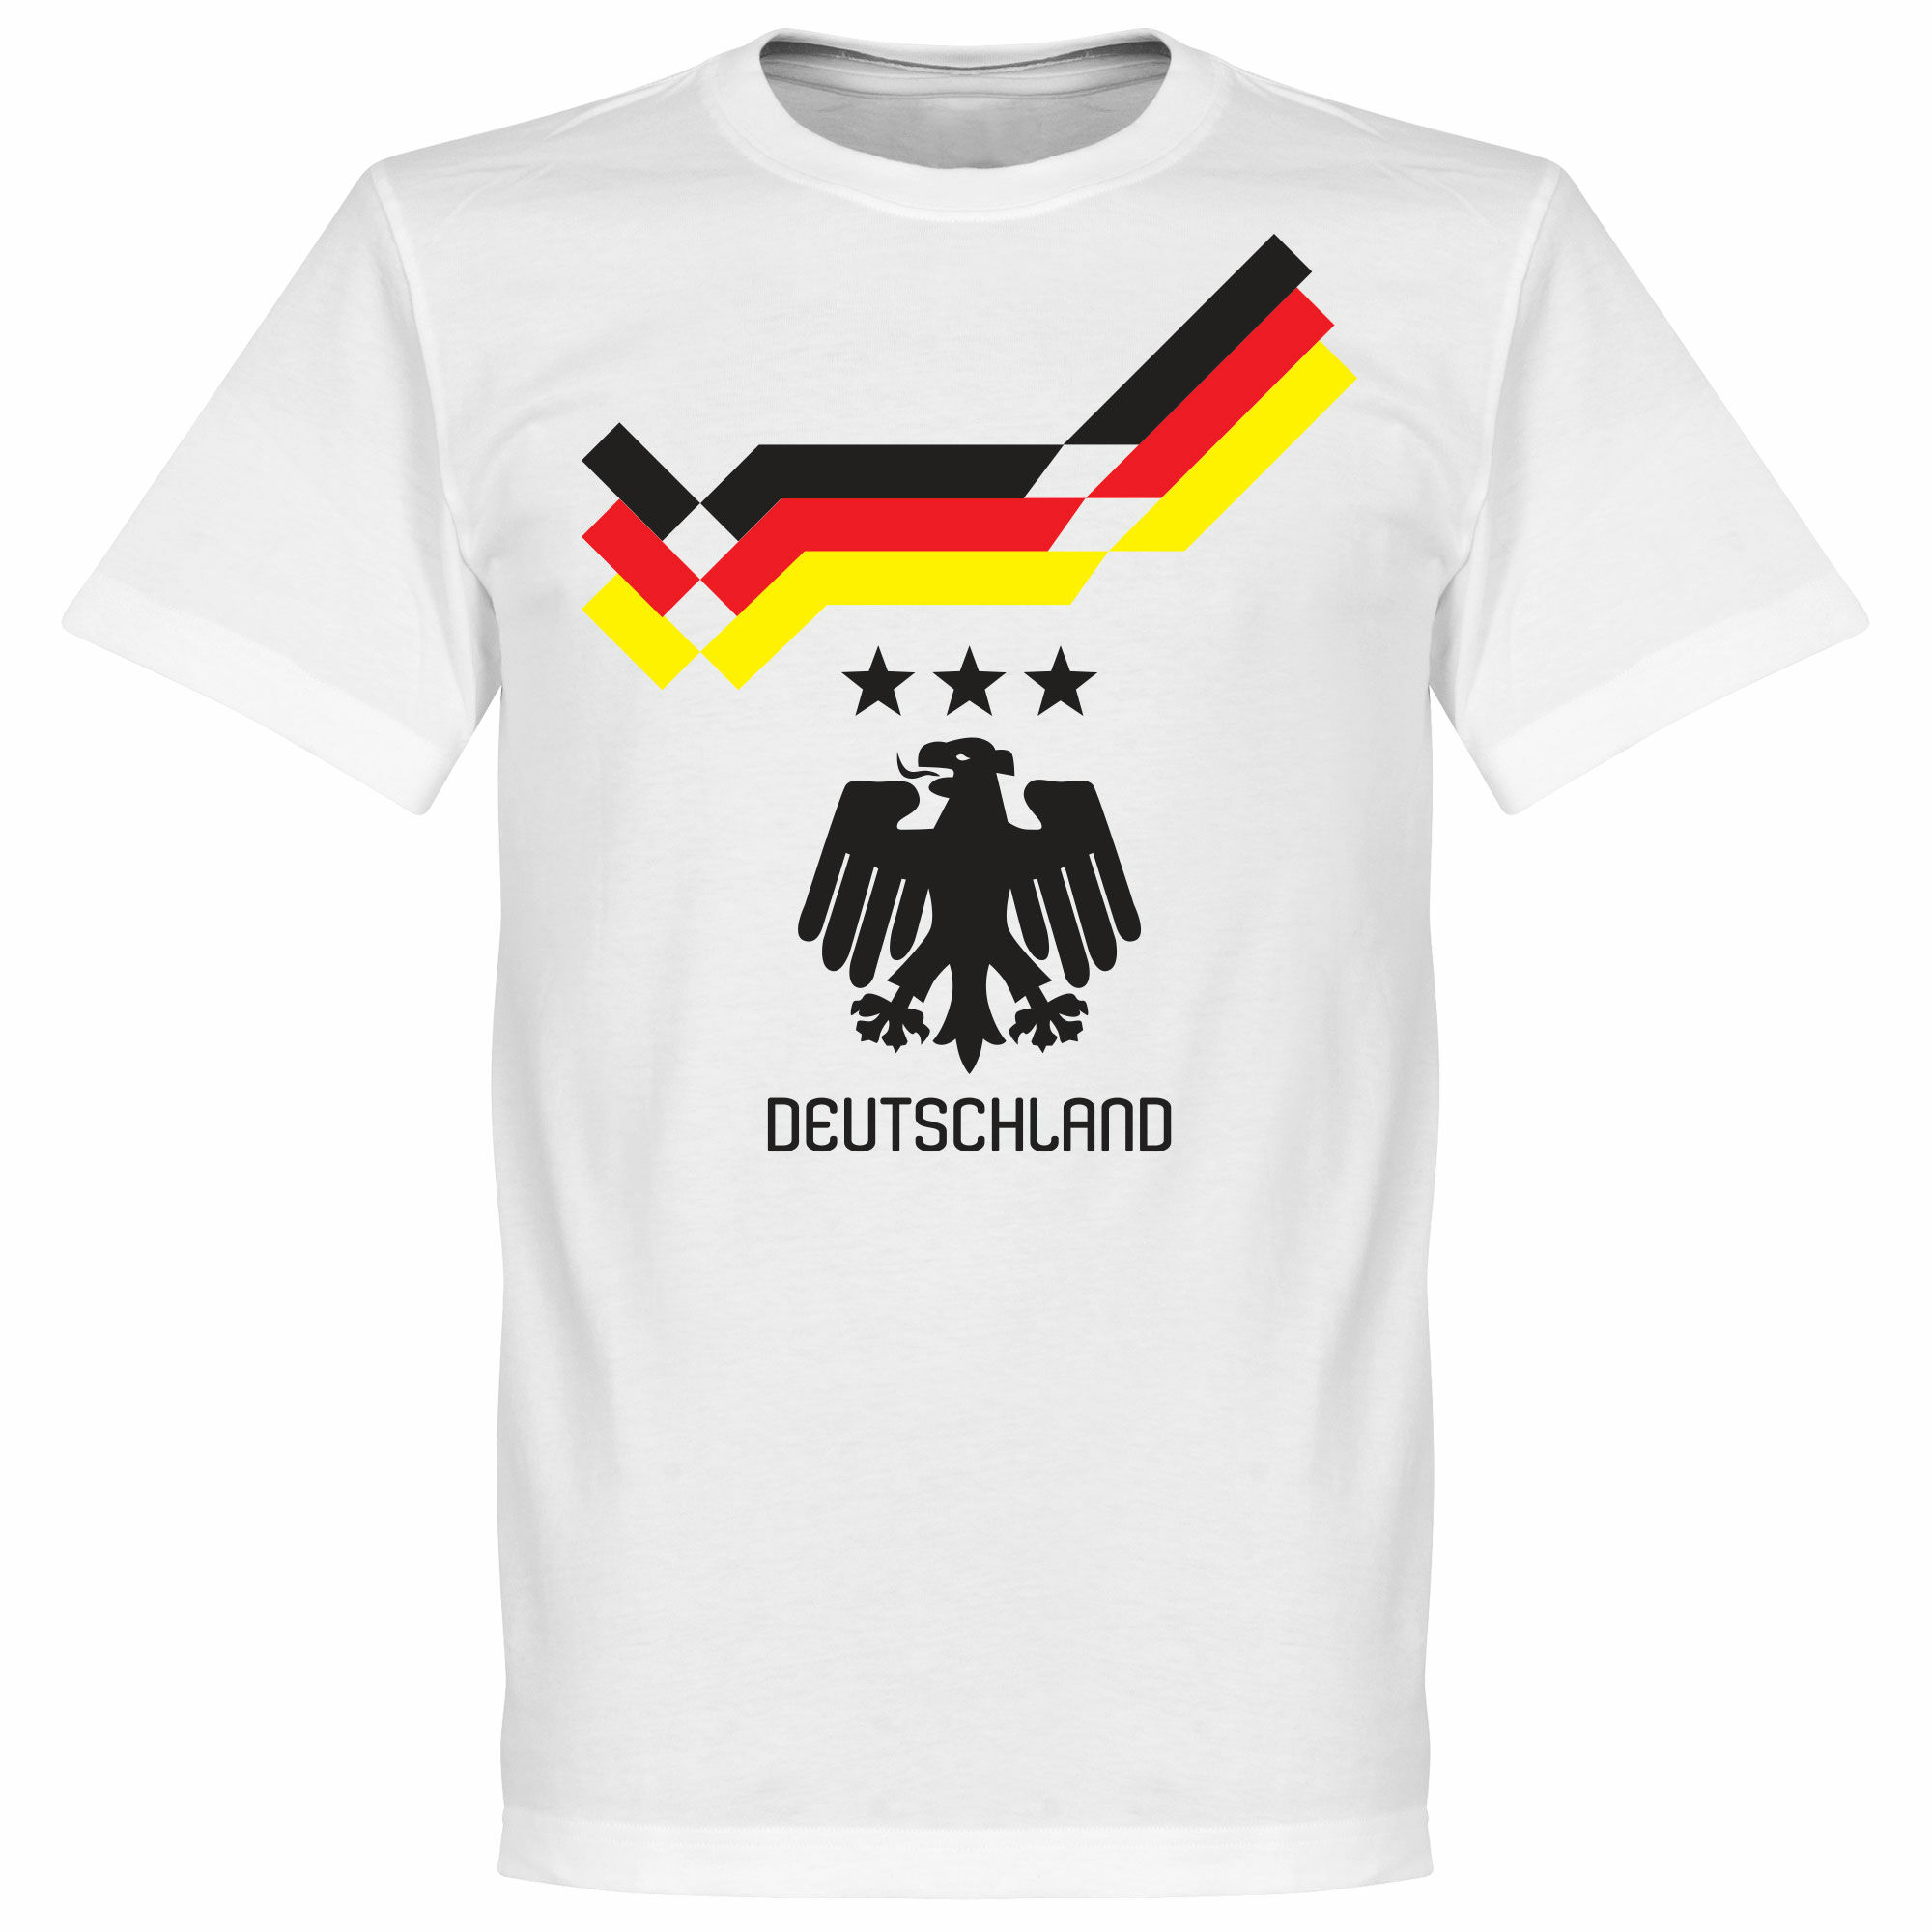 Německo - Tričko dětské - bílé, 1990